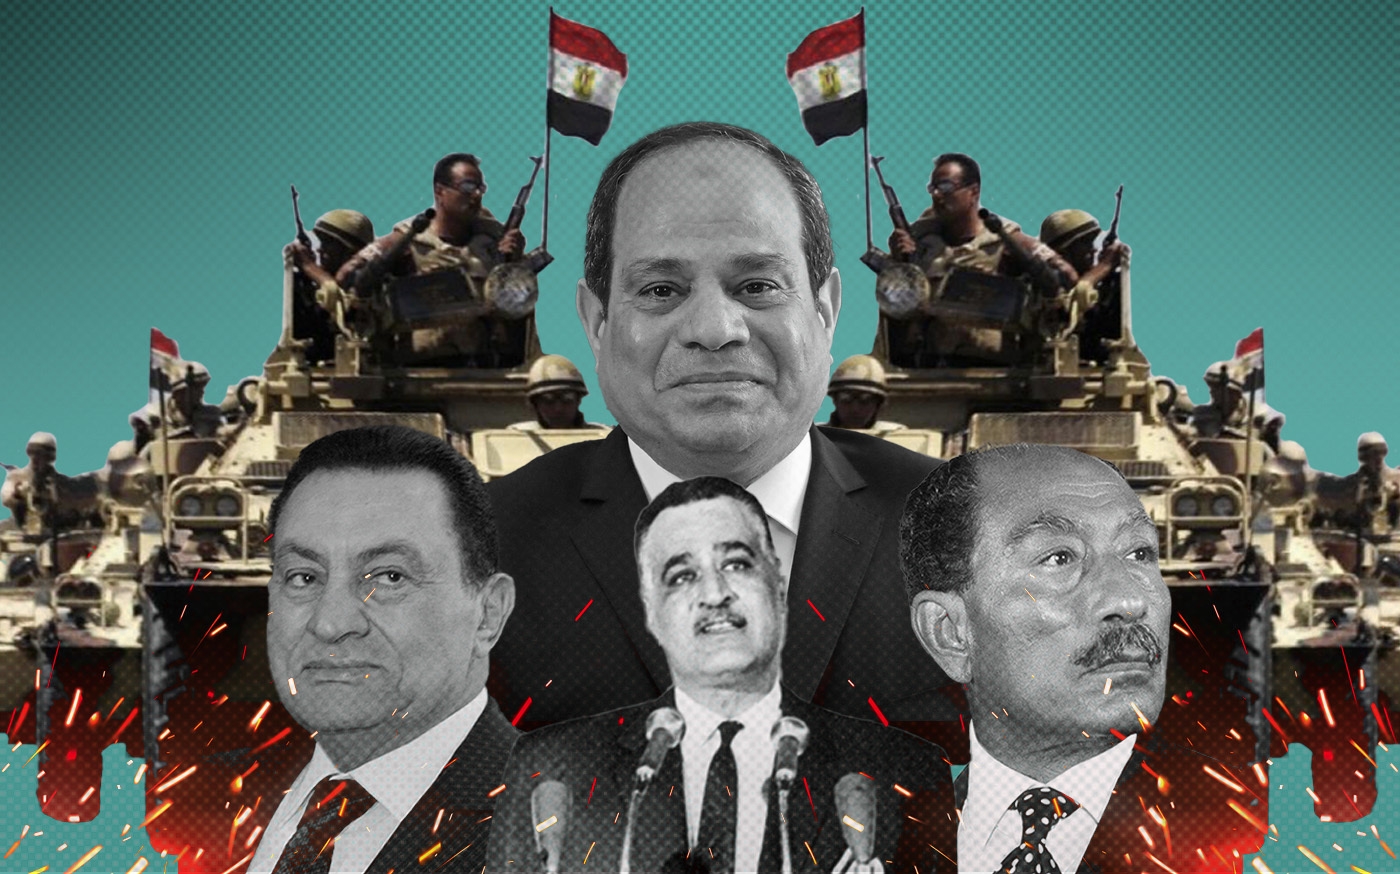 Portrait des présidents-officiers égyptiens (de gauche à droite) : Hosni Moubarak, Gamal Abdel-Nasser, Anouar el-Sadate et Abdel Fattah al-Sissi (MEE)